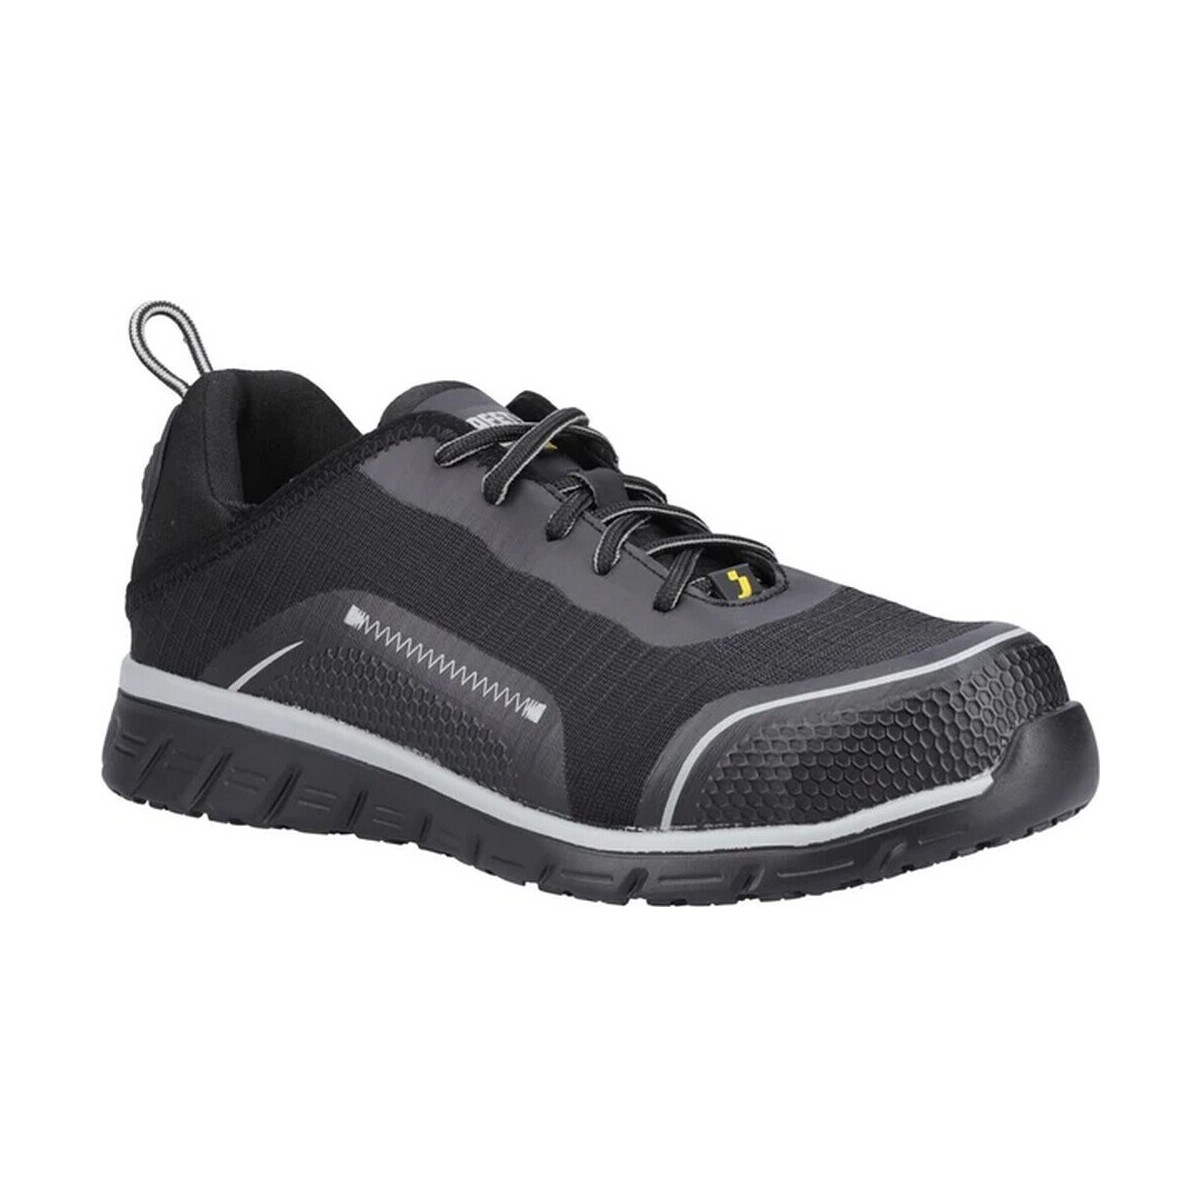 Zapatos Hombre zapatos de seguridad  Safety Jogger LIGERO2 S1P Negro